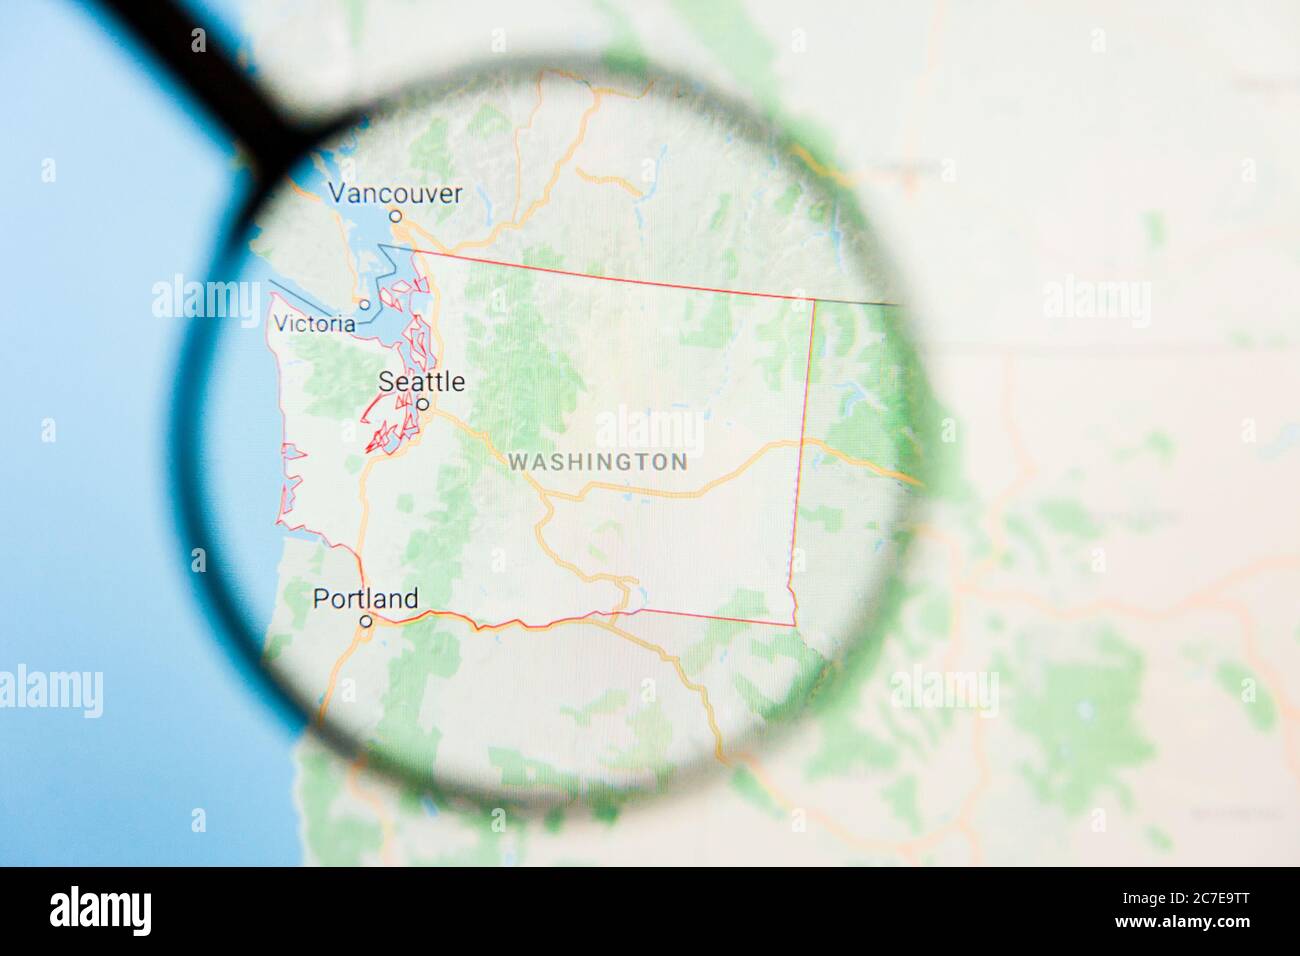 Los Angeles, California, USA - 15. März 2019: Washington, WA State of America Visualisierung illustratives Konzept auf dem Bildschirm durch Vergrößerungen Stockfoto